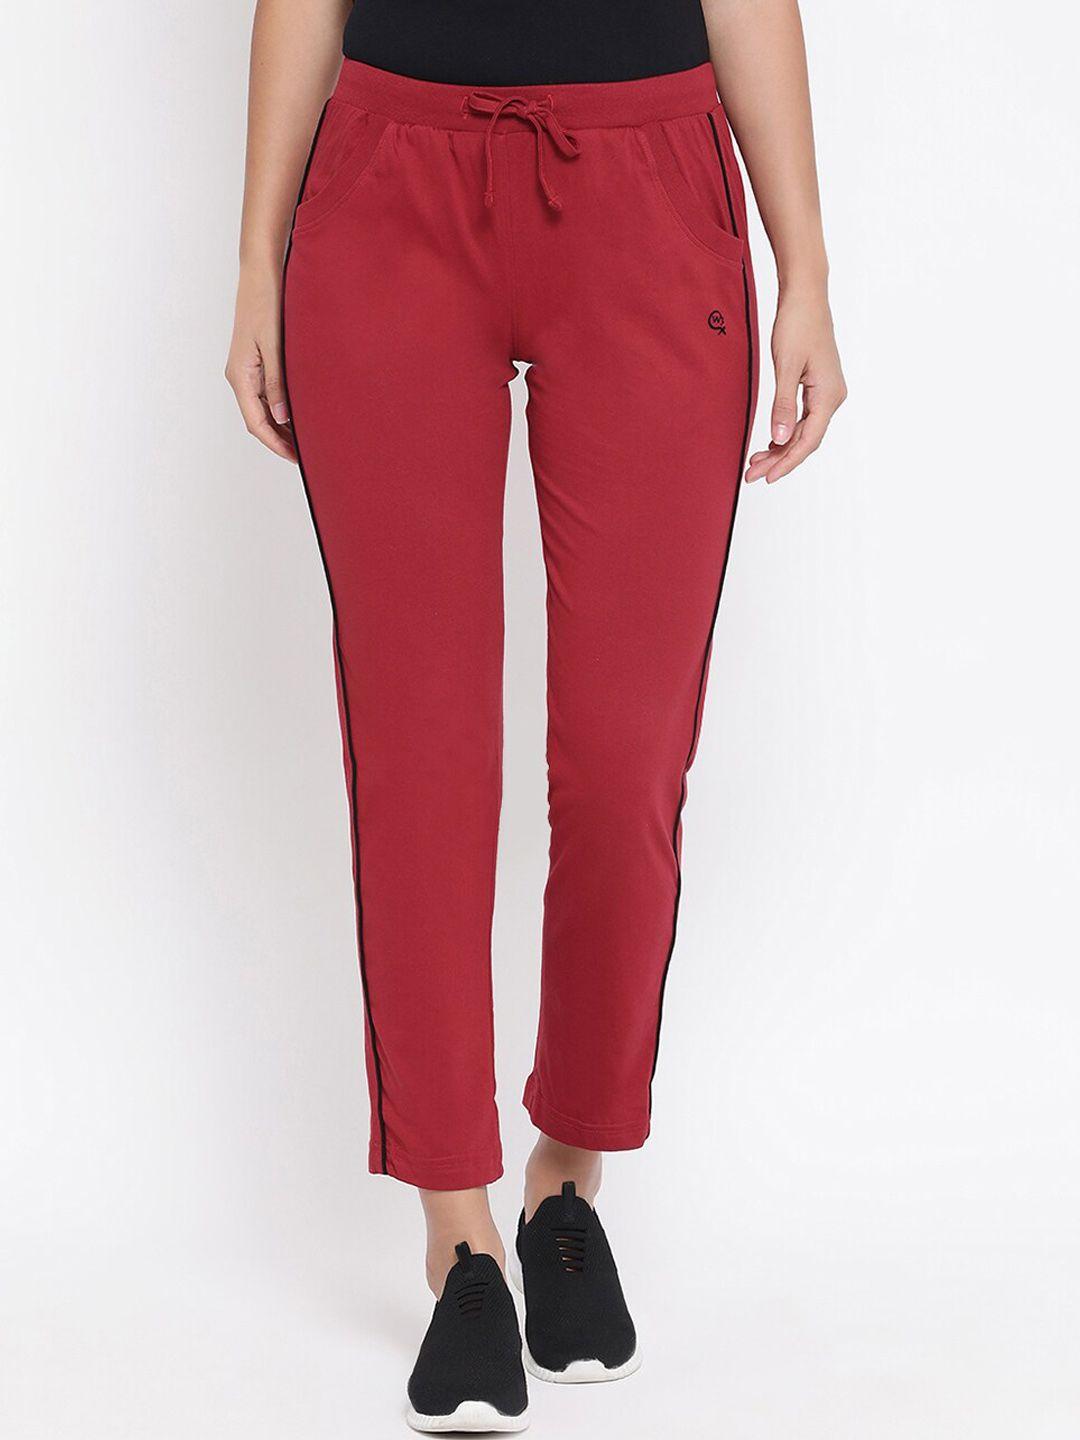 macrowoman w-series women cotton mid-rise track pants